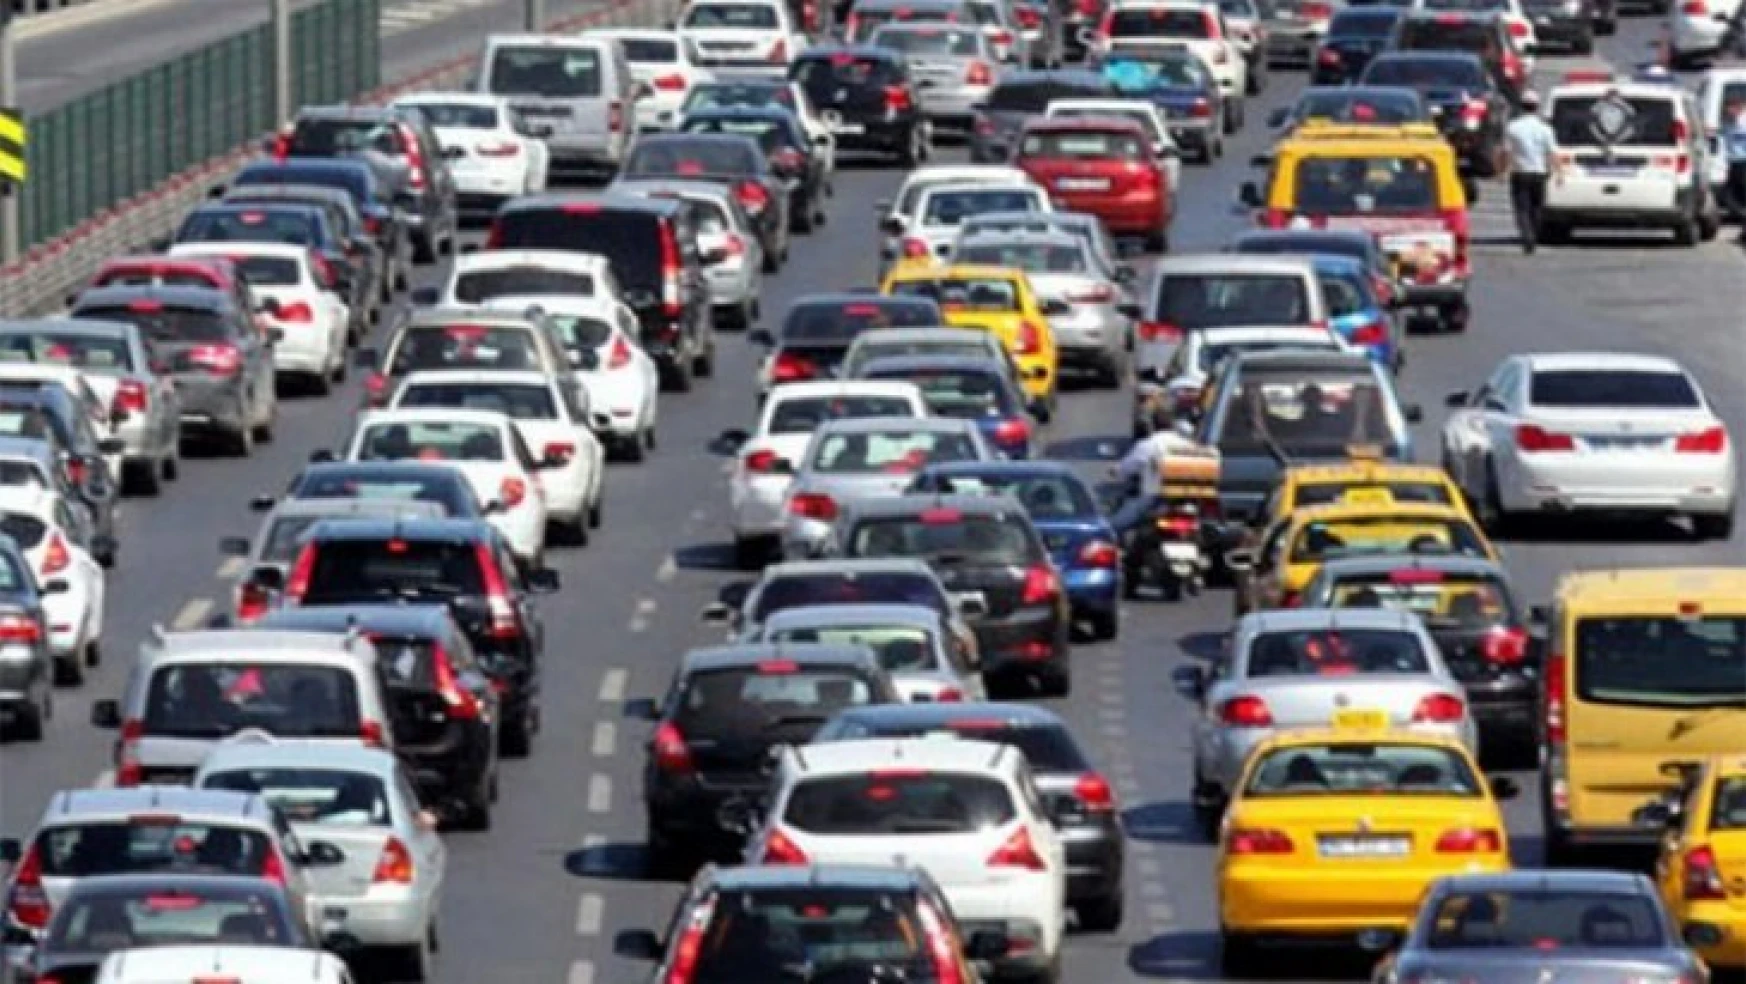 Malatya'da trafiğe kayıtlı araç sayısı Eylül ayı sonu itibarıyla 175 883 oldu.